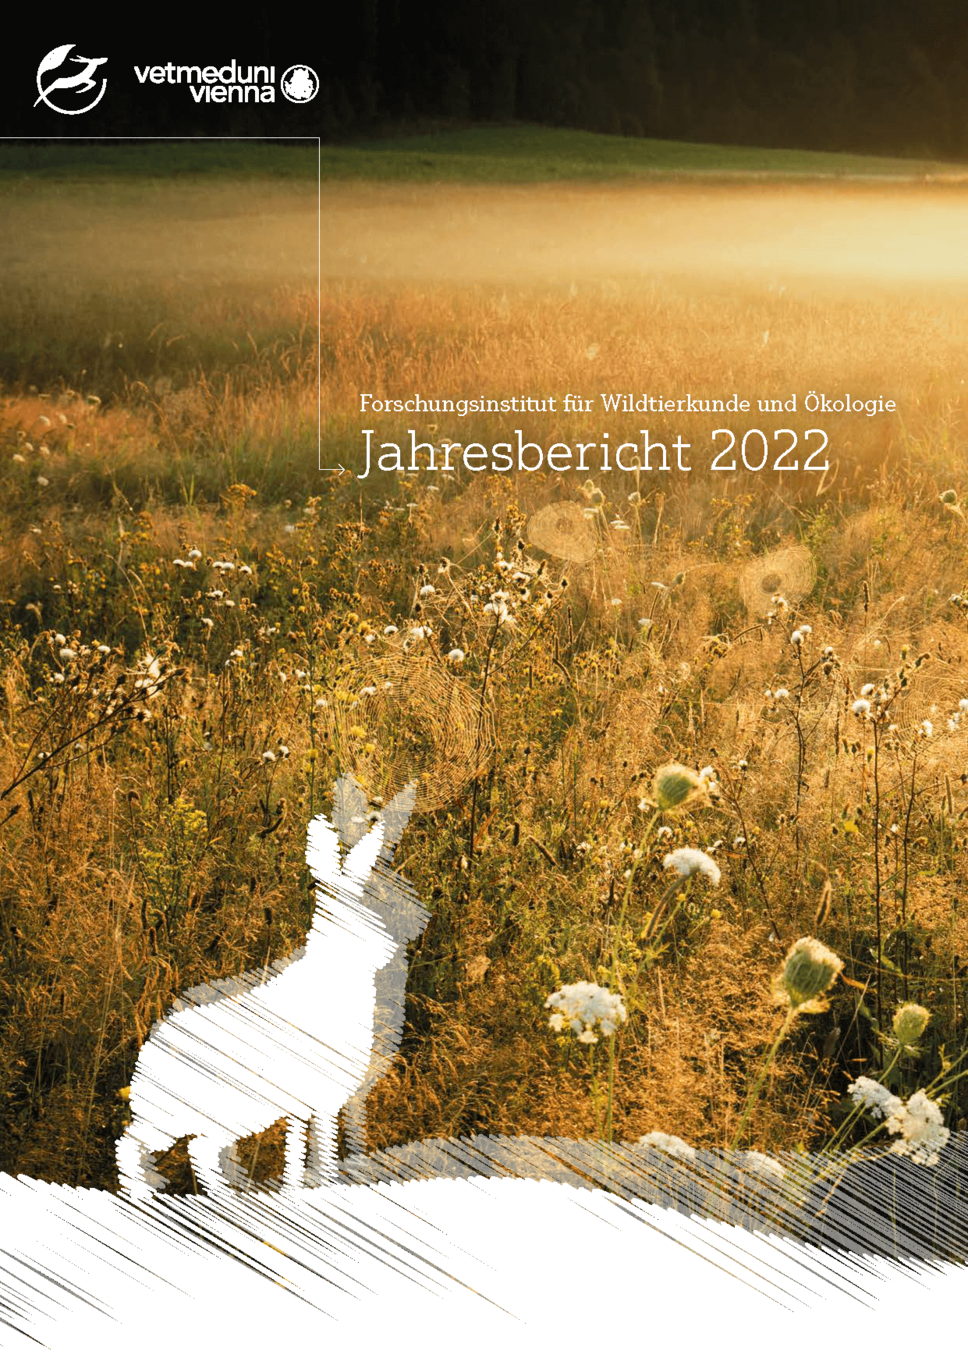 Cover vom FIWI Jahresbericht 2022 mit Hasen im Blumenfeld